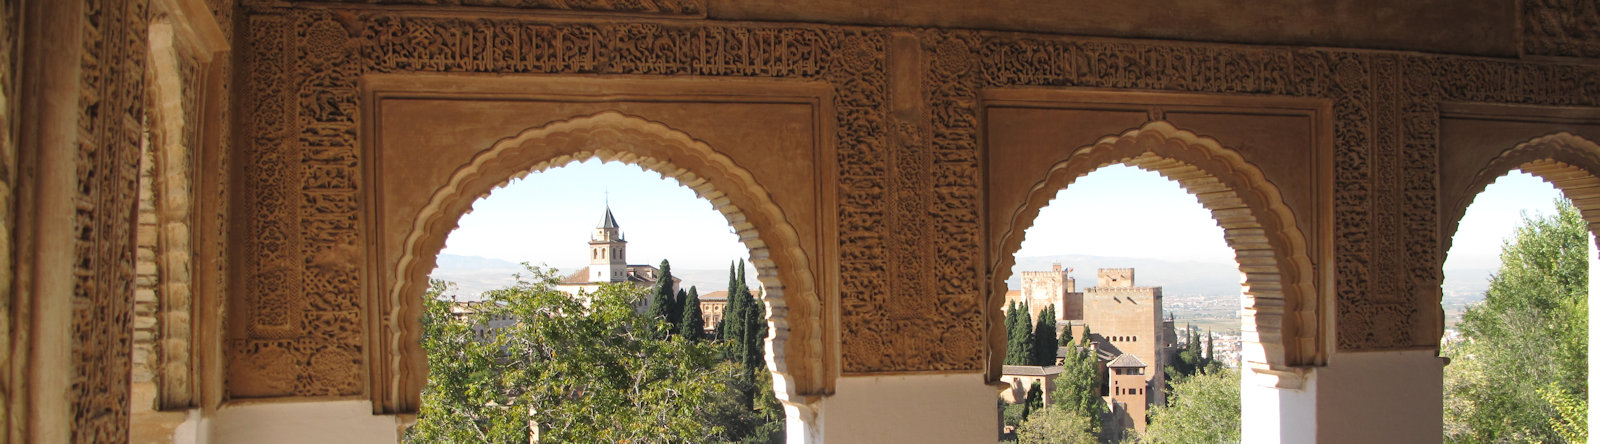 Alhambra, det befæstede mauriske slotskompleks i Granada